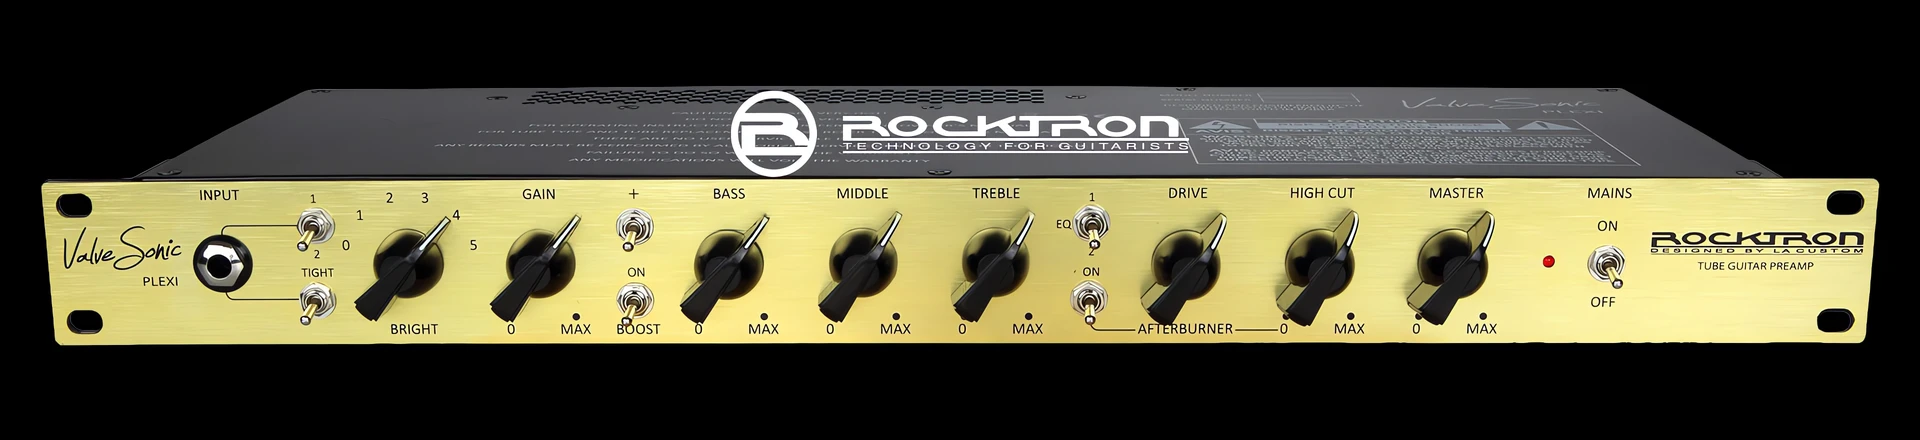 Rockstron prezentuje preamp gitarowy ValveSonic Plexi 